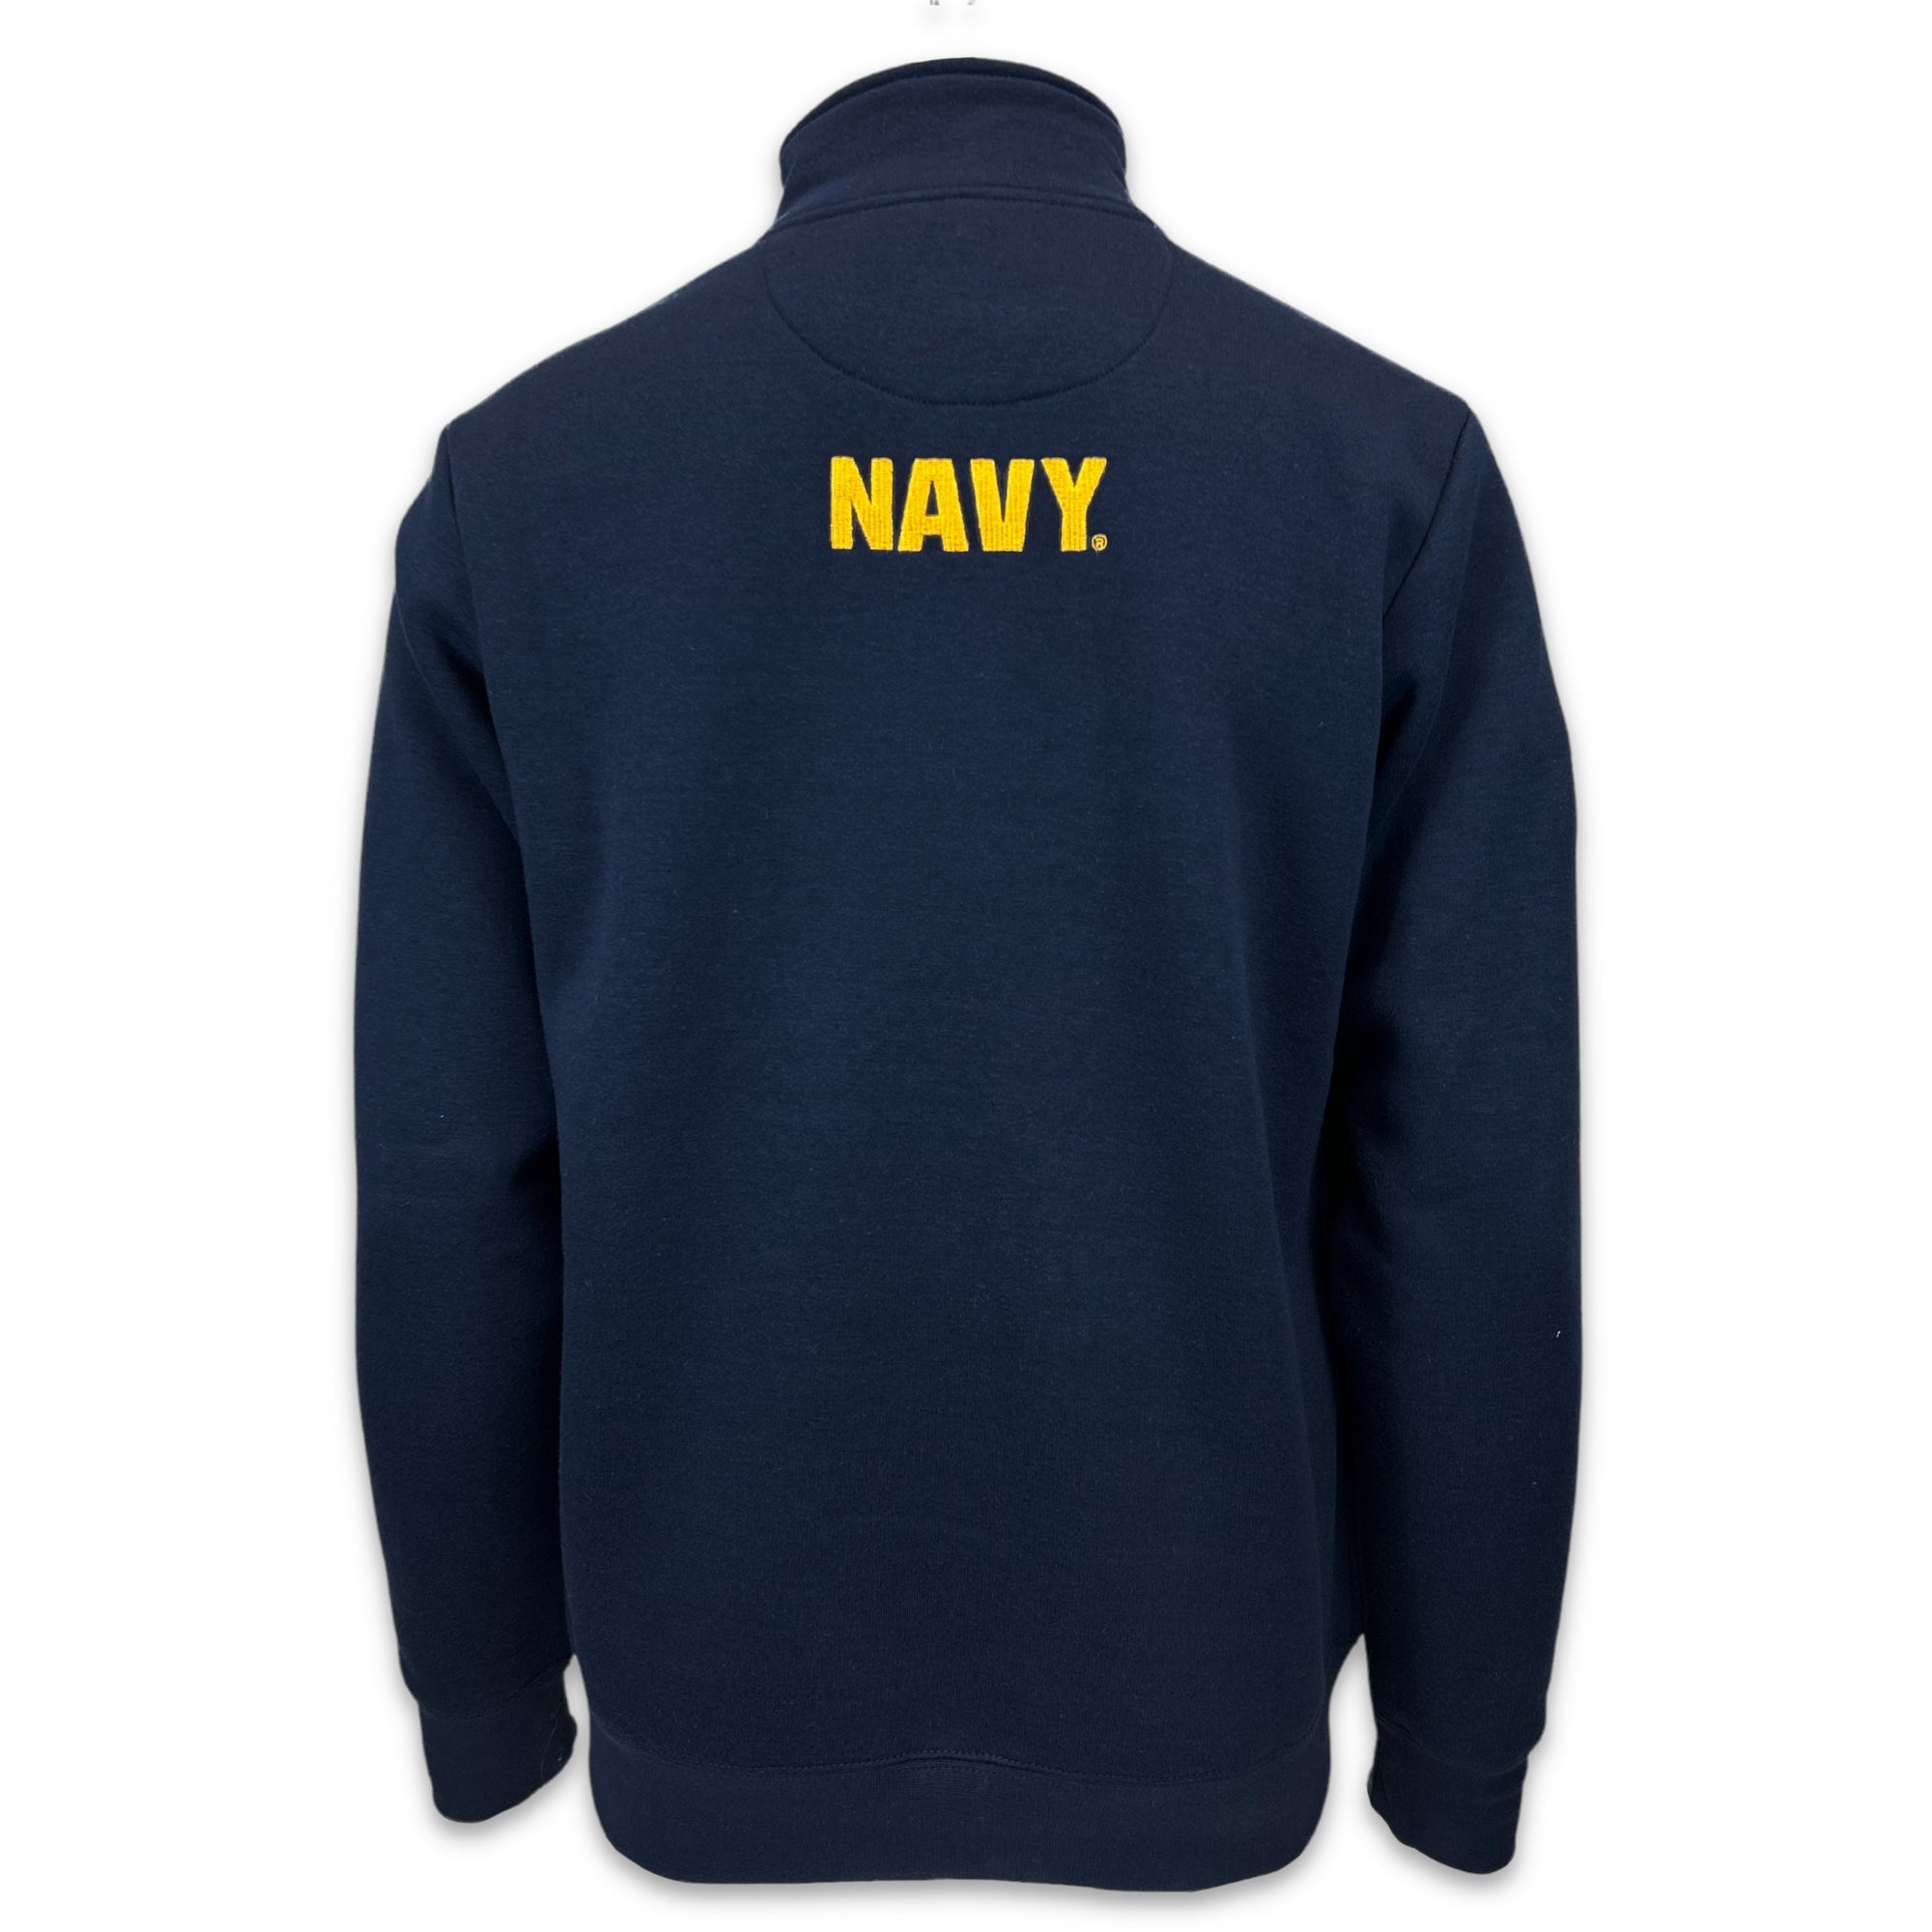 U.S. Navy Sweatshirts: Navy Anchor Embroidered Fleece 1/4 Zip in Navy